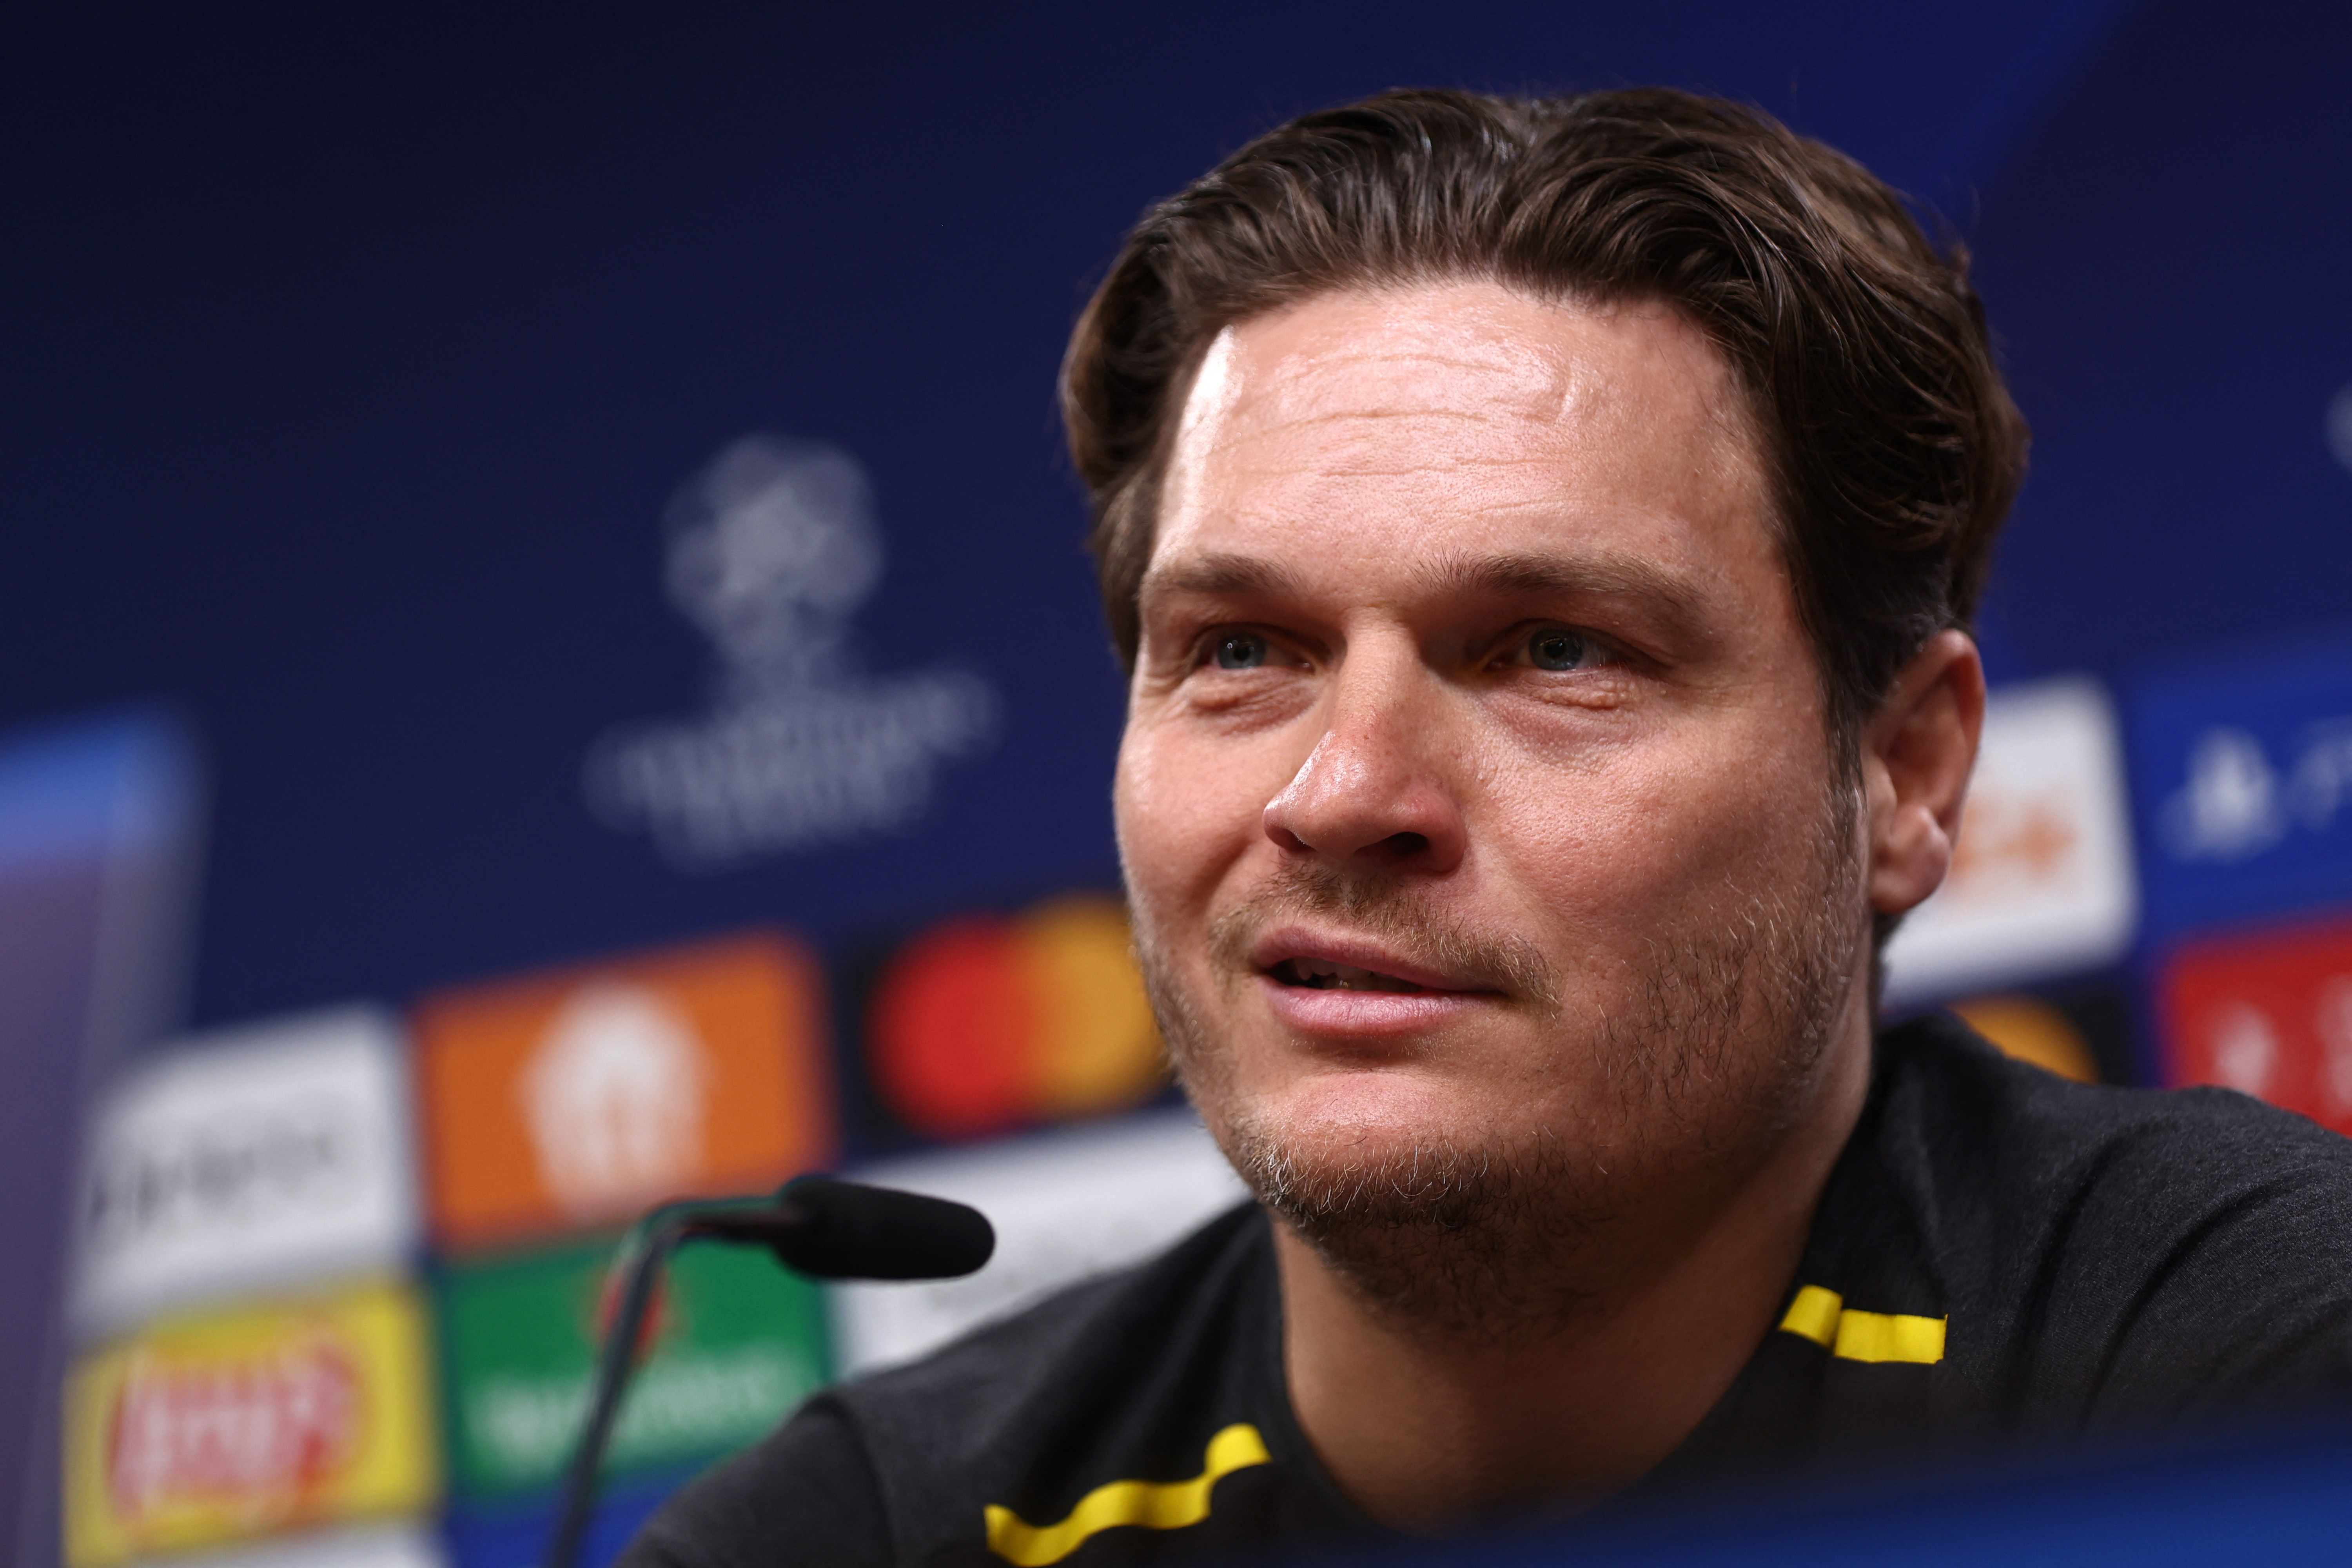 Champions League - Borussia Dortmund Press Conference